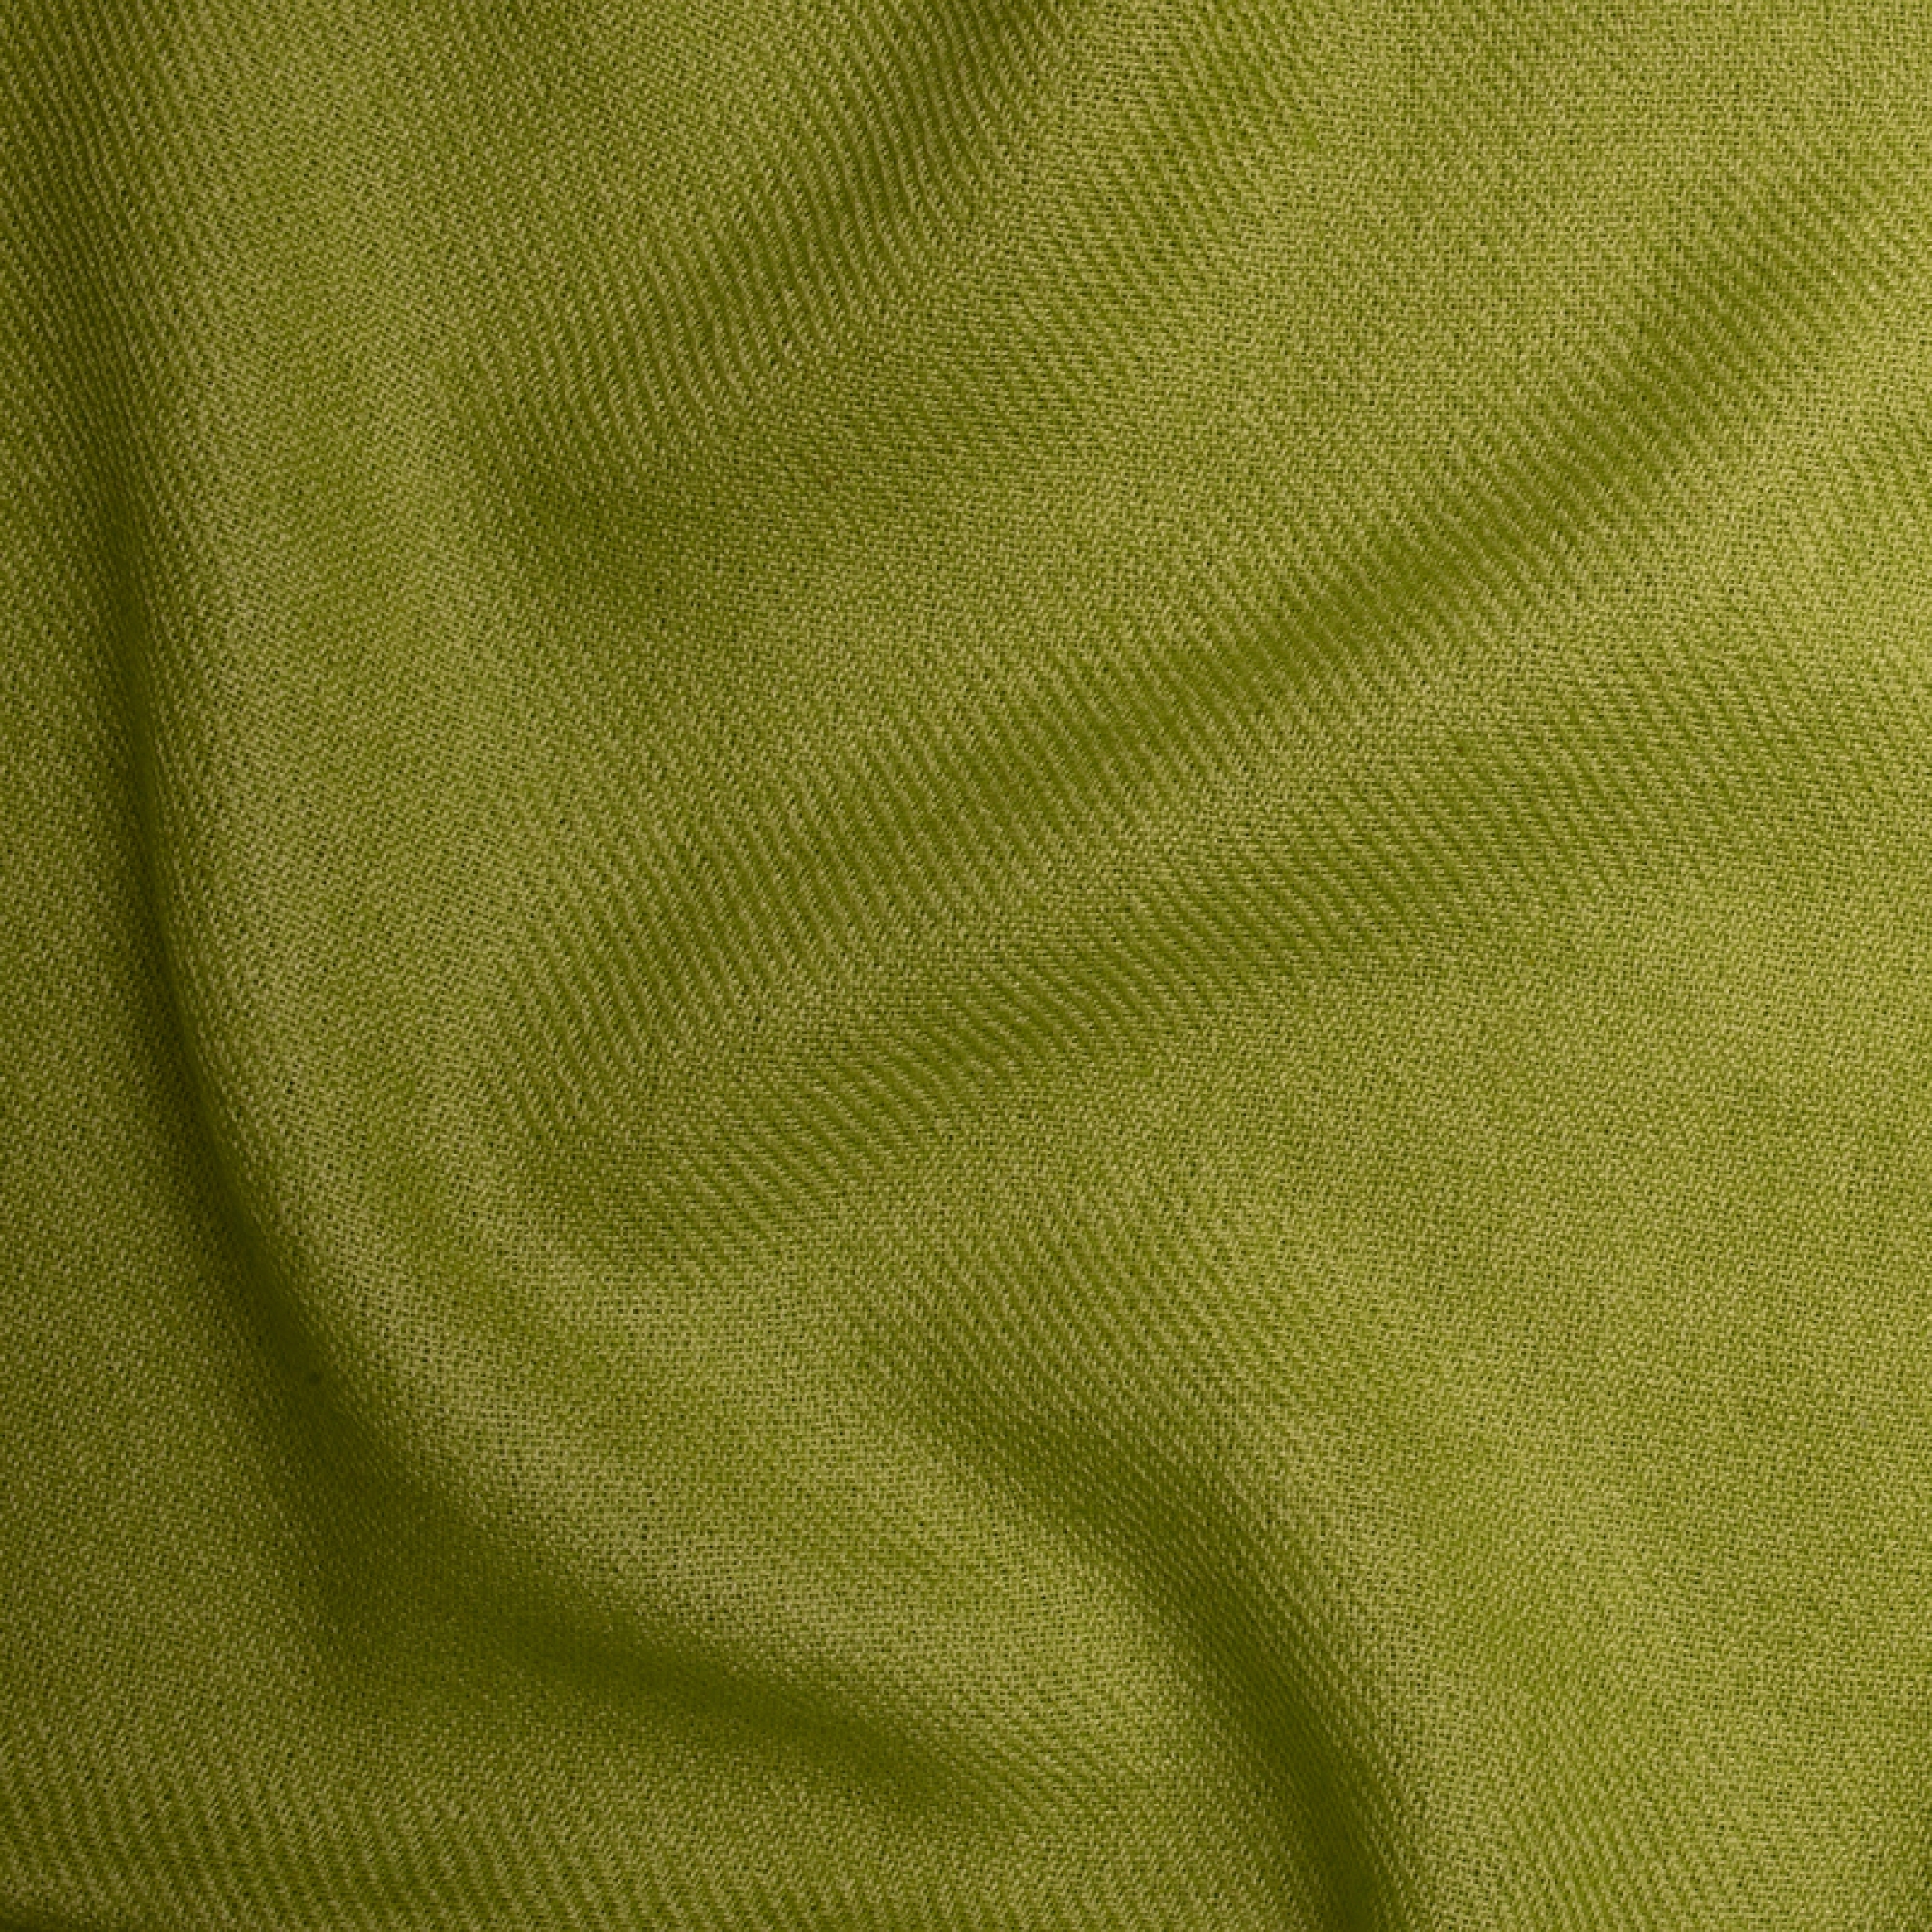 Cachemire accessoires couvertures plaids toodoo plain m 180 x 220 kiwi 180 x 220 cm